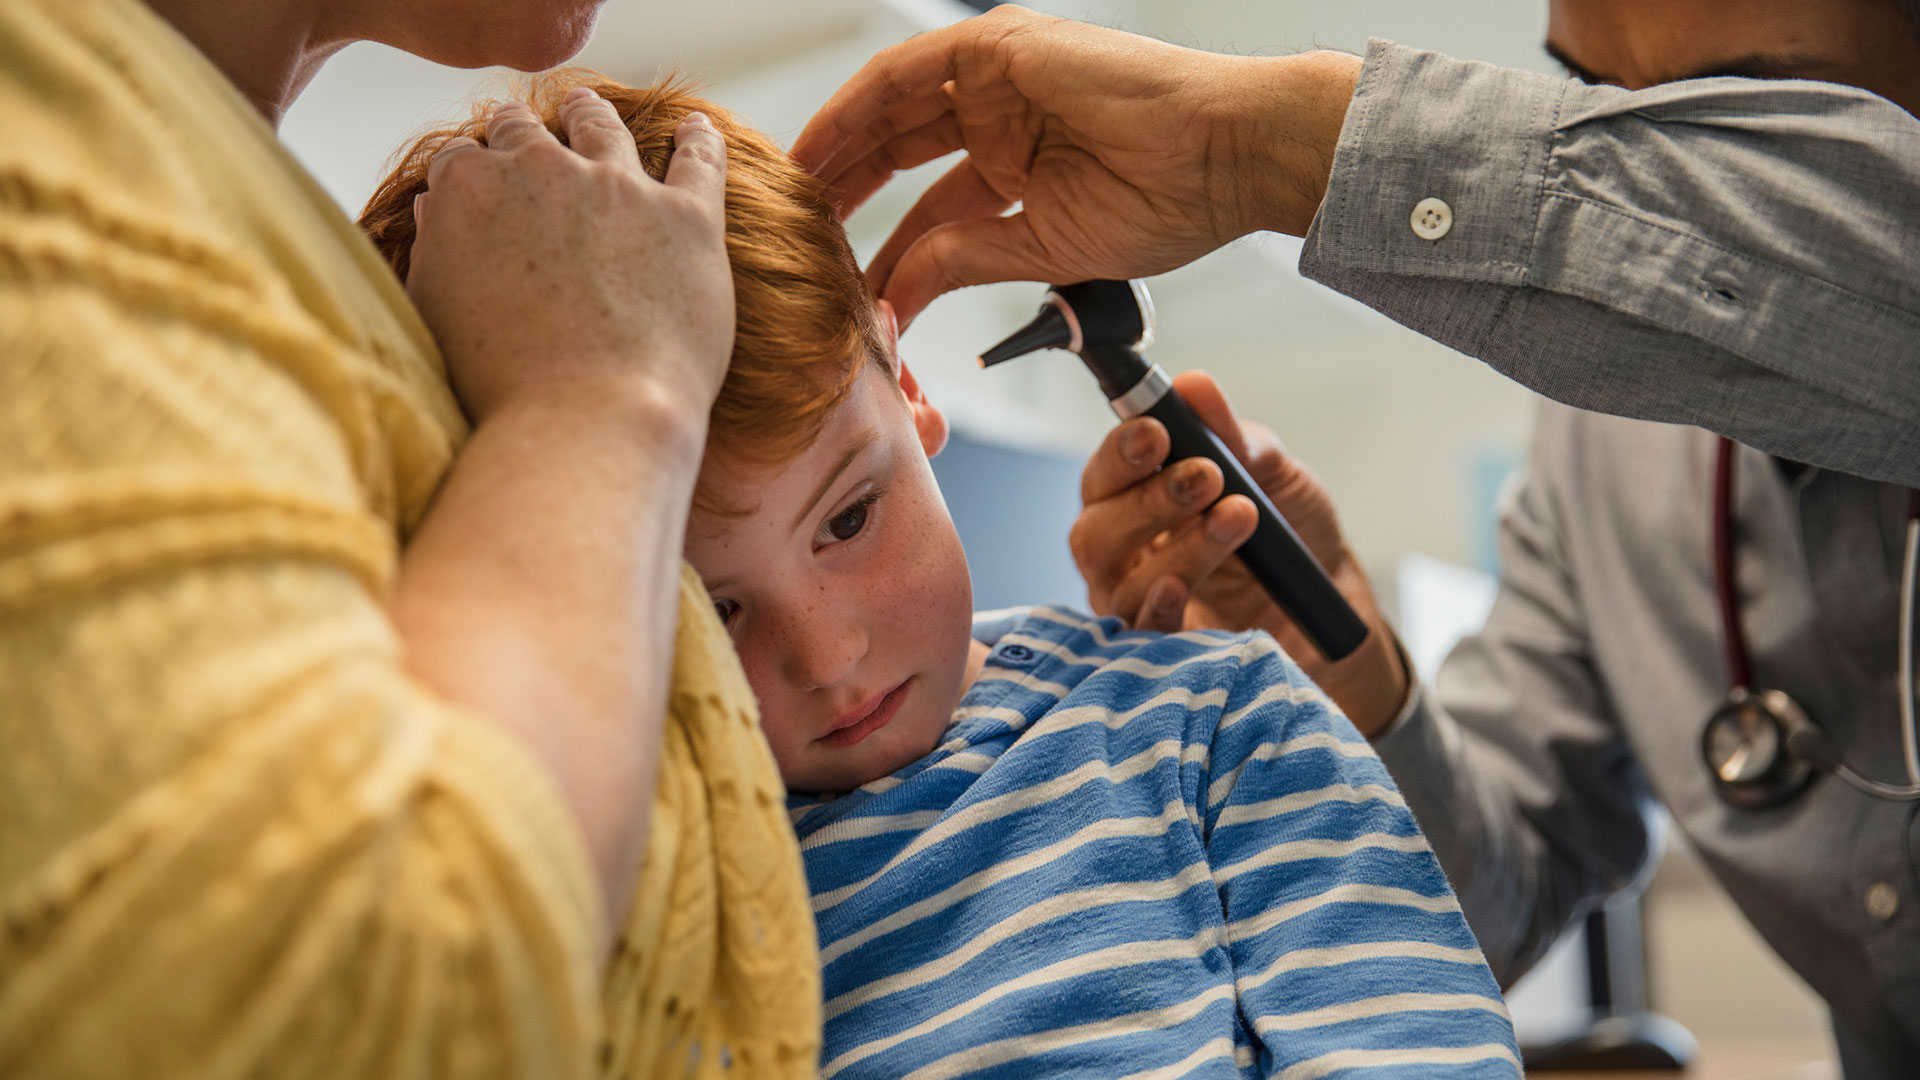 La detección temprana de la pérdida de audición y de las enfermedades otológicas es fundamental para poder ofrecer un tratamiento eficaz (Getty Images)